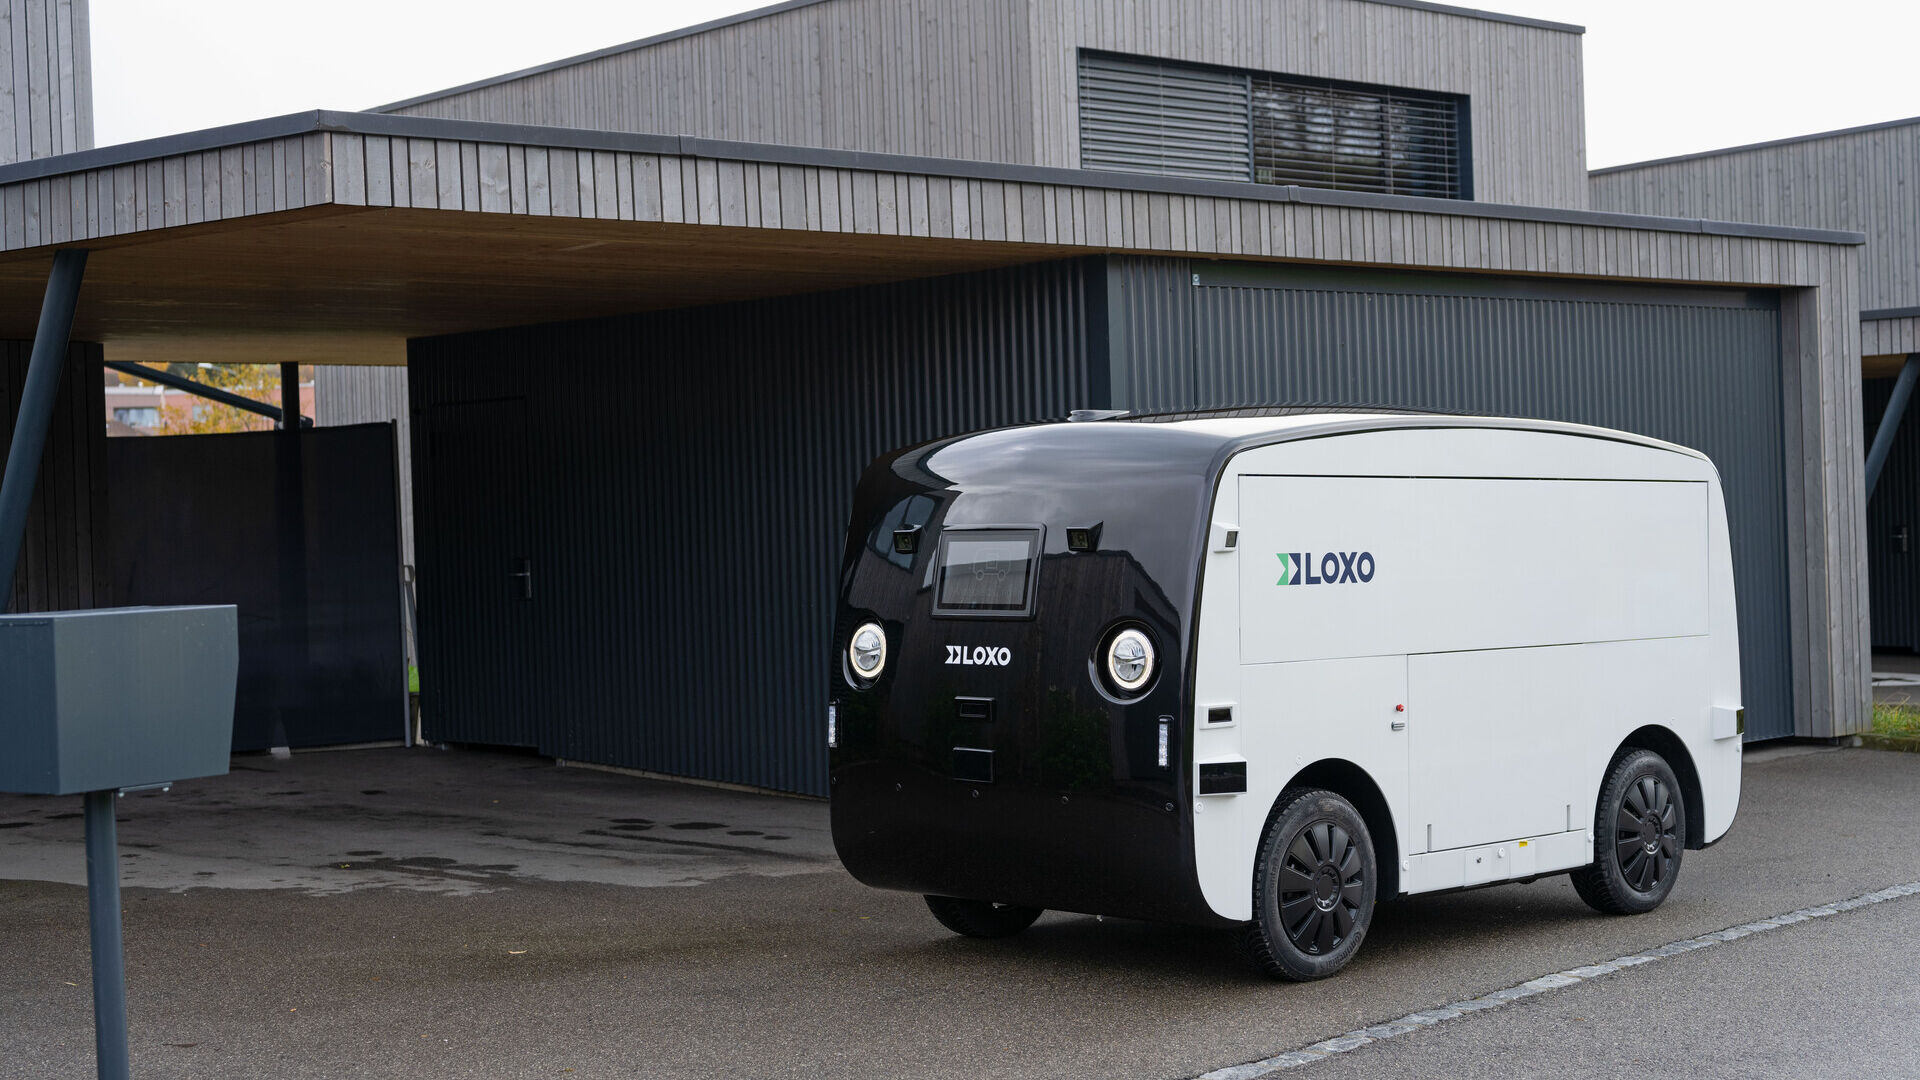 LOXO: Alpha është një furgon vetë-drejtues i prodhuar tërësisht në Zvicër dhe i prezantuar më 6 dhjetor 2022 në Kursaal në Bernë gjatë një konference për shtyp nga start-up LOXO